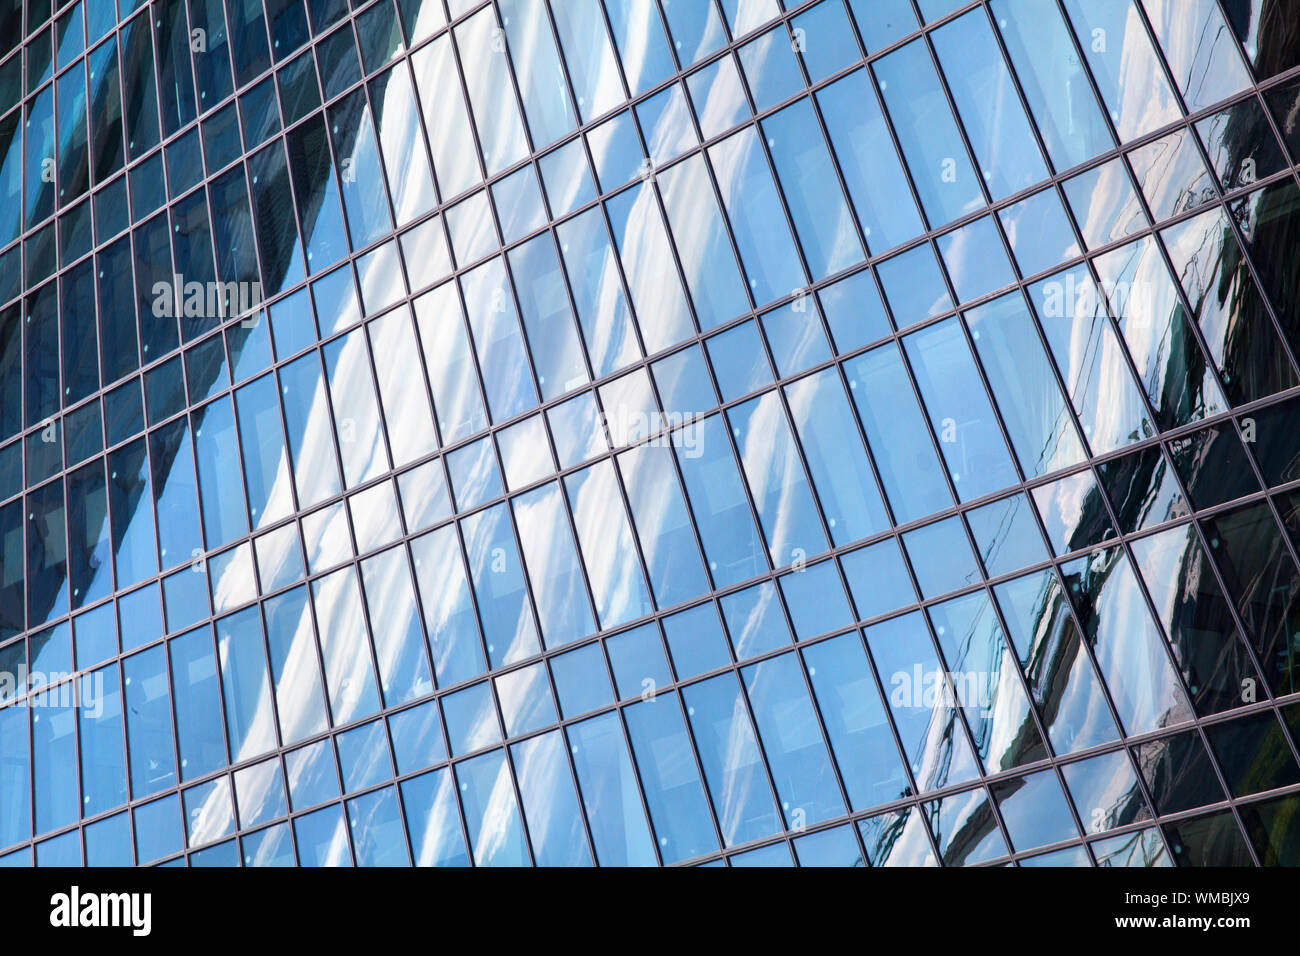 Glas Spiegel skyscraper Wand mit blauem Himmel und weißen Wolken Reflexion Nahaufnahme modernes Business Center anzeigen Financial City District, geometrische Muster Stockfoto